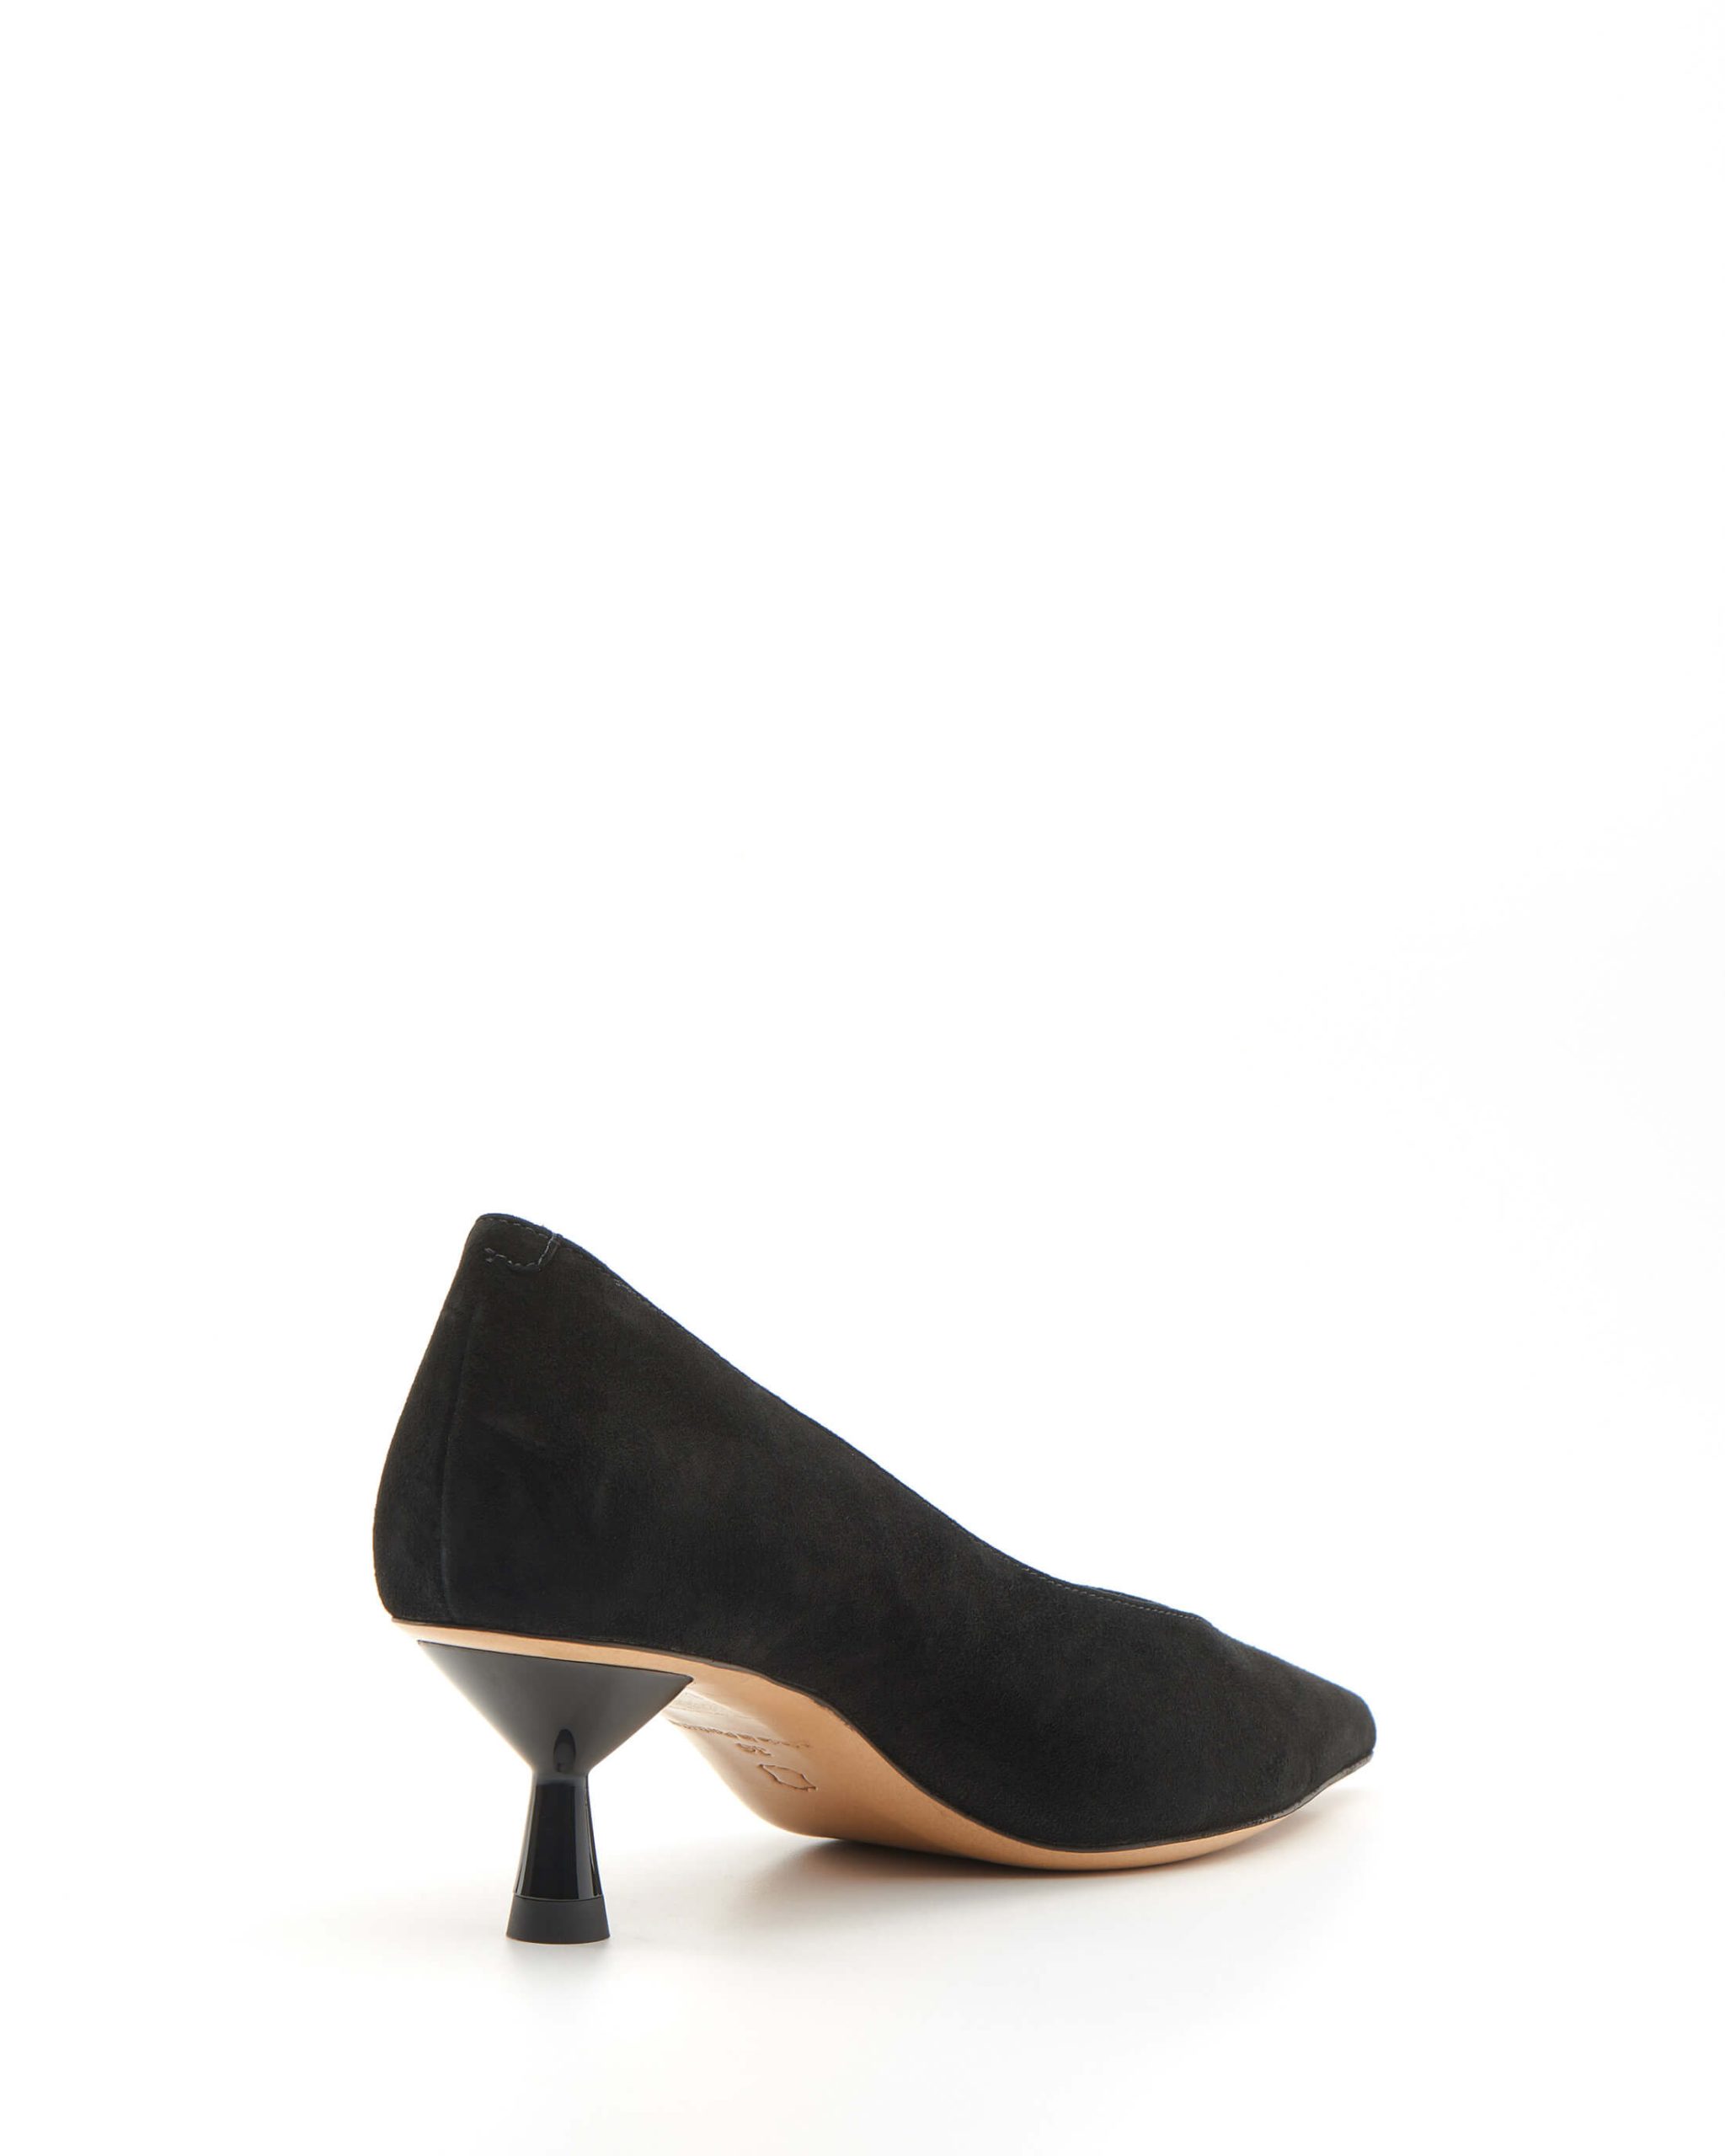 Luis Onofre Portuguese Shoes SS23 – Eden – 5356_01 – Hela Black-3